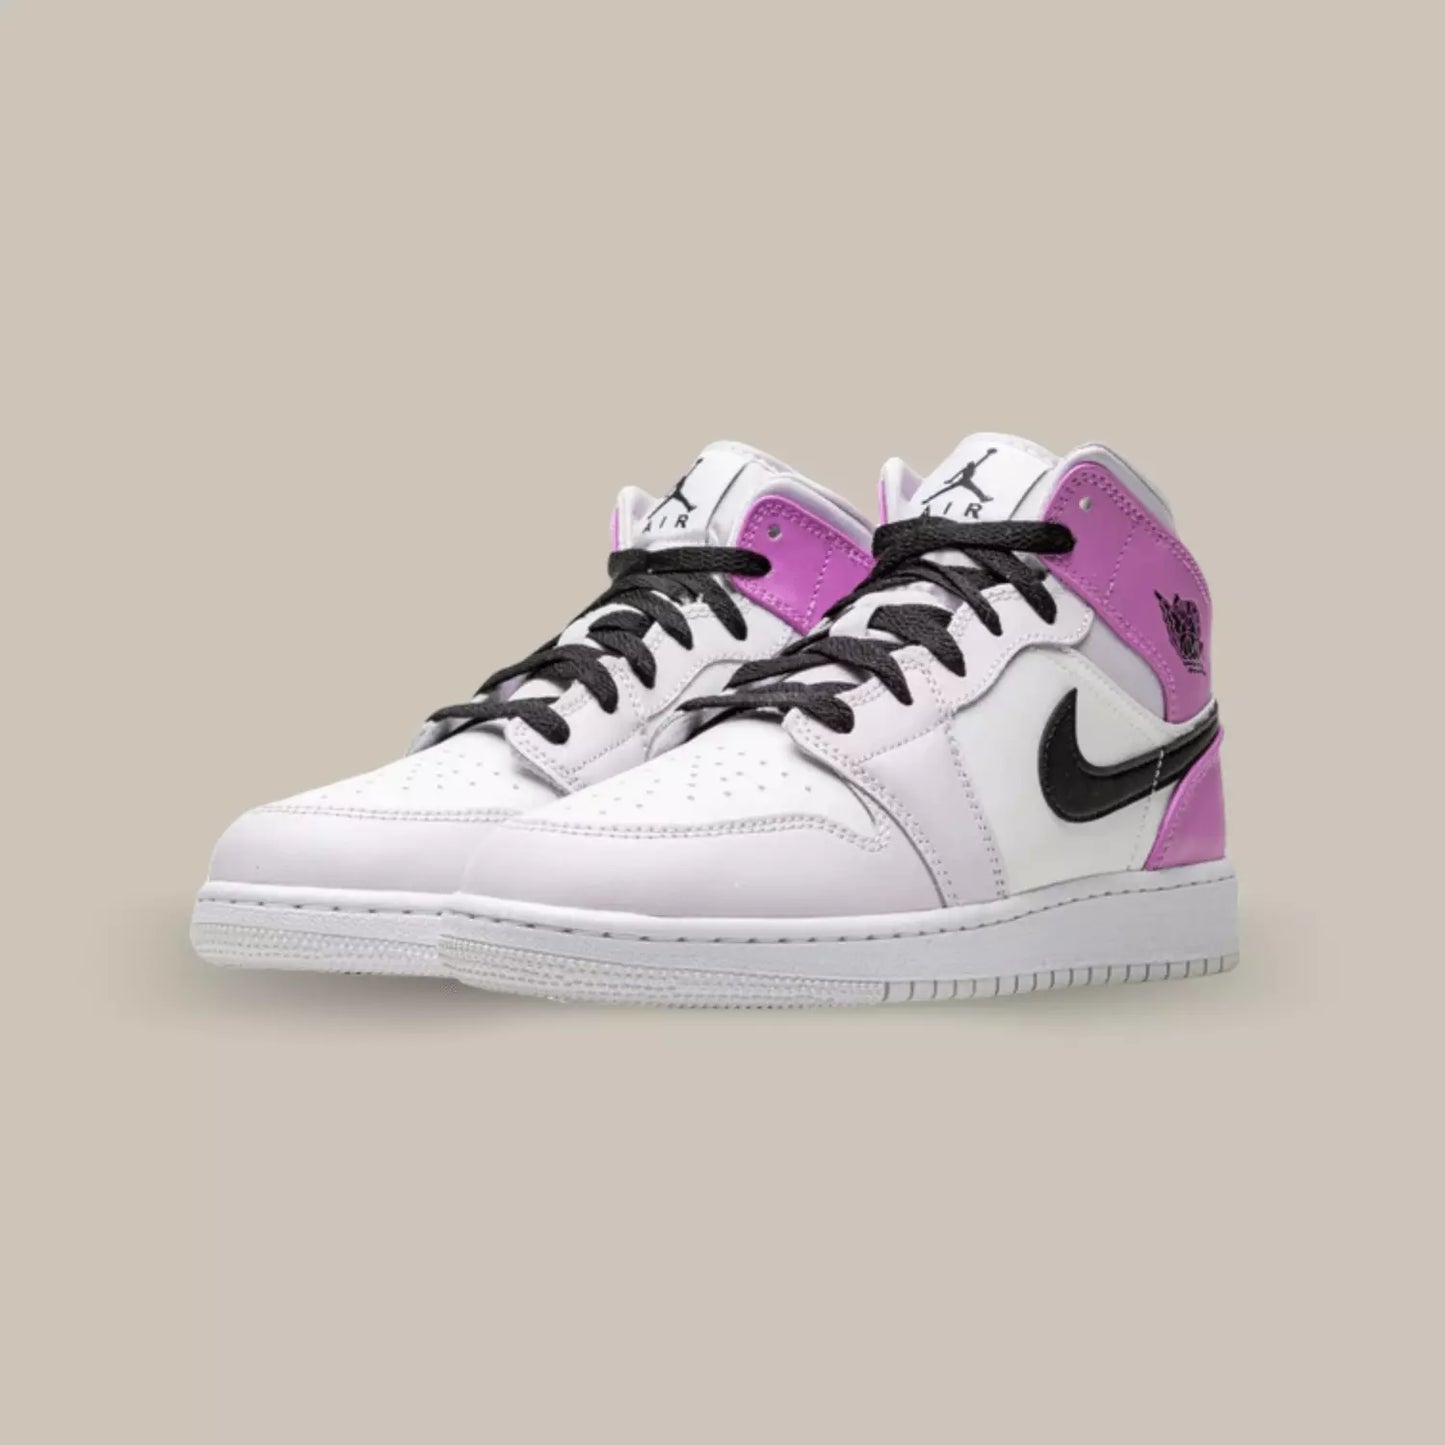 La Air Jordan 1 Mid "Barely Grape" présente une combinaison de couleurs qui respire l'élégance. Les tons de violet pastel, de blanc et de noir se marient harmonieusement pour créer un look raffiné qui se démarque dans la rue.